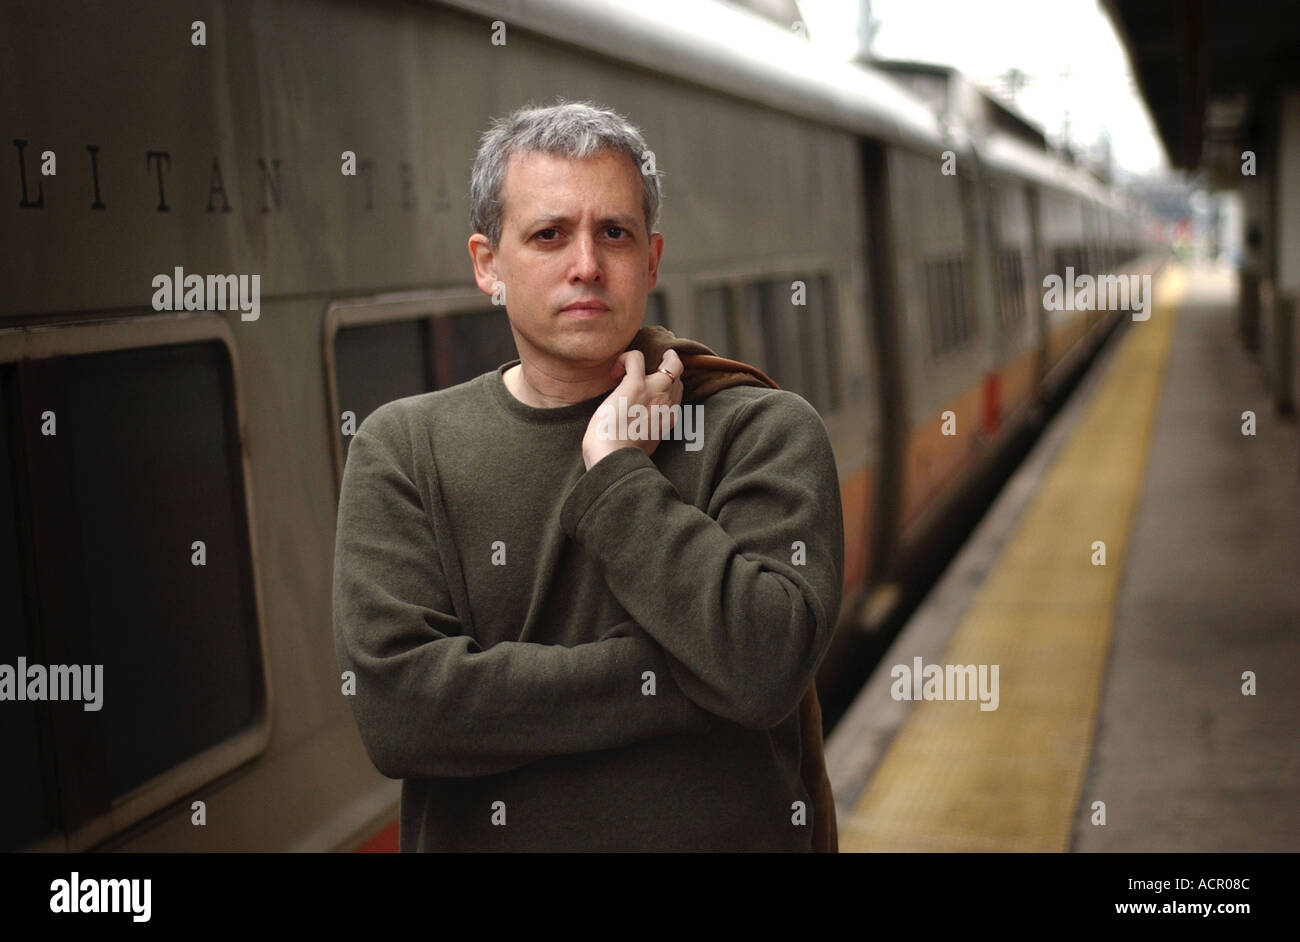 Dei premi Pulitzer drammaturgo Donald Margulies accanto a un treno in New Haven Connecticut USA Foto Stock